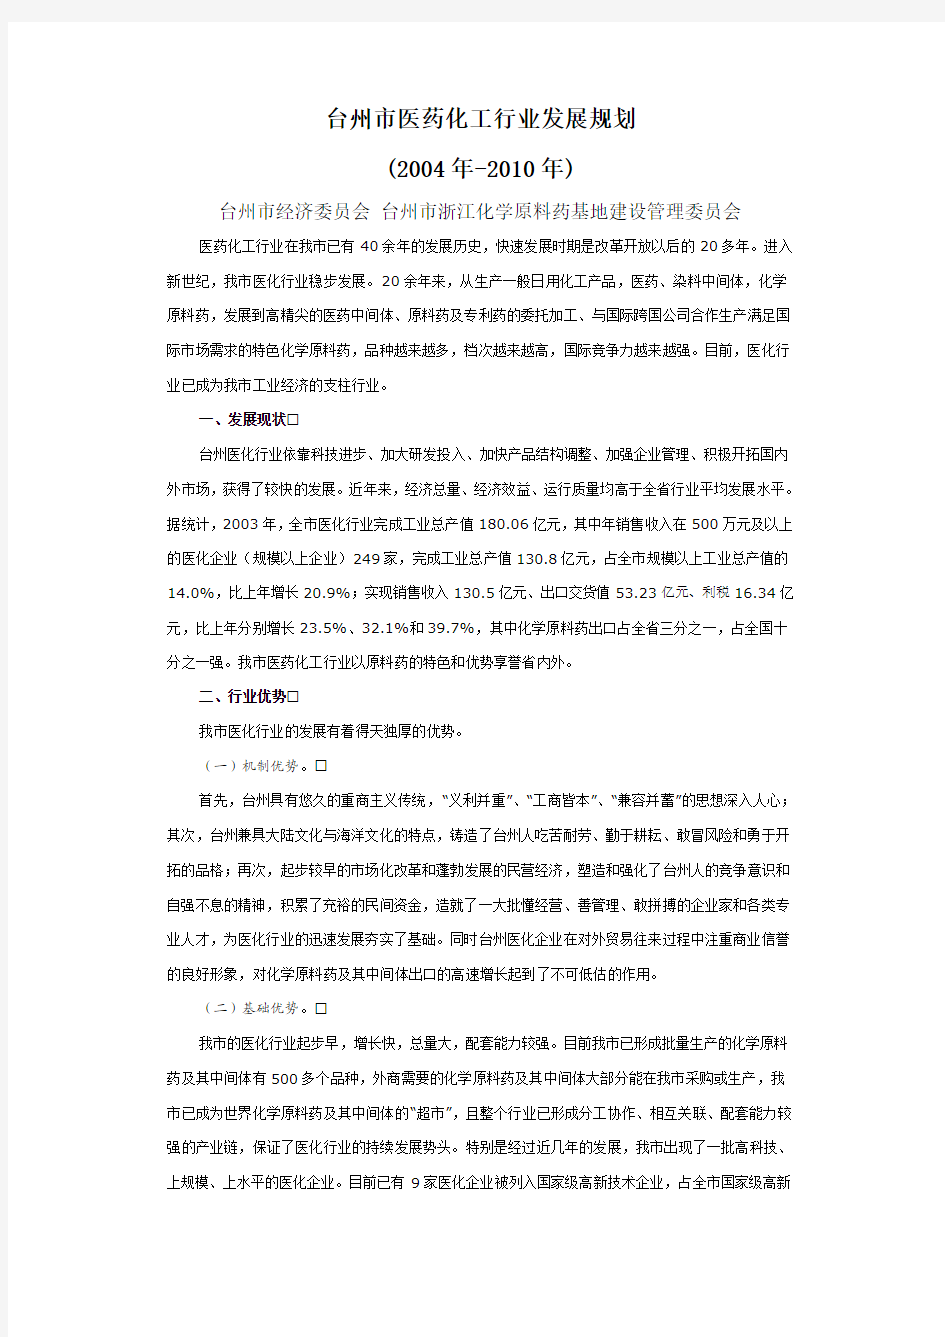 台州市医药化工行业发展规划